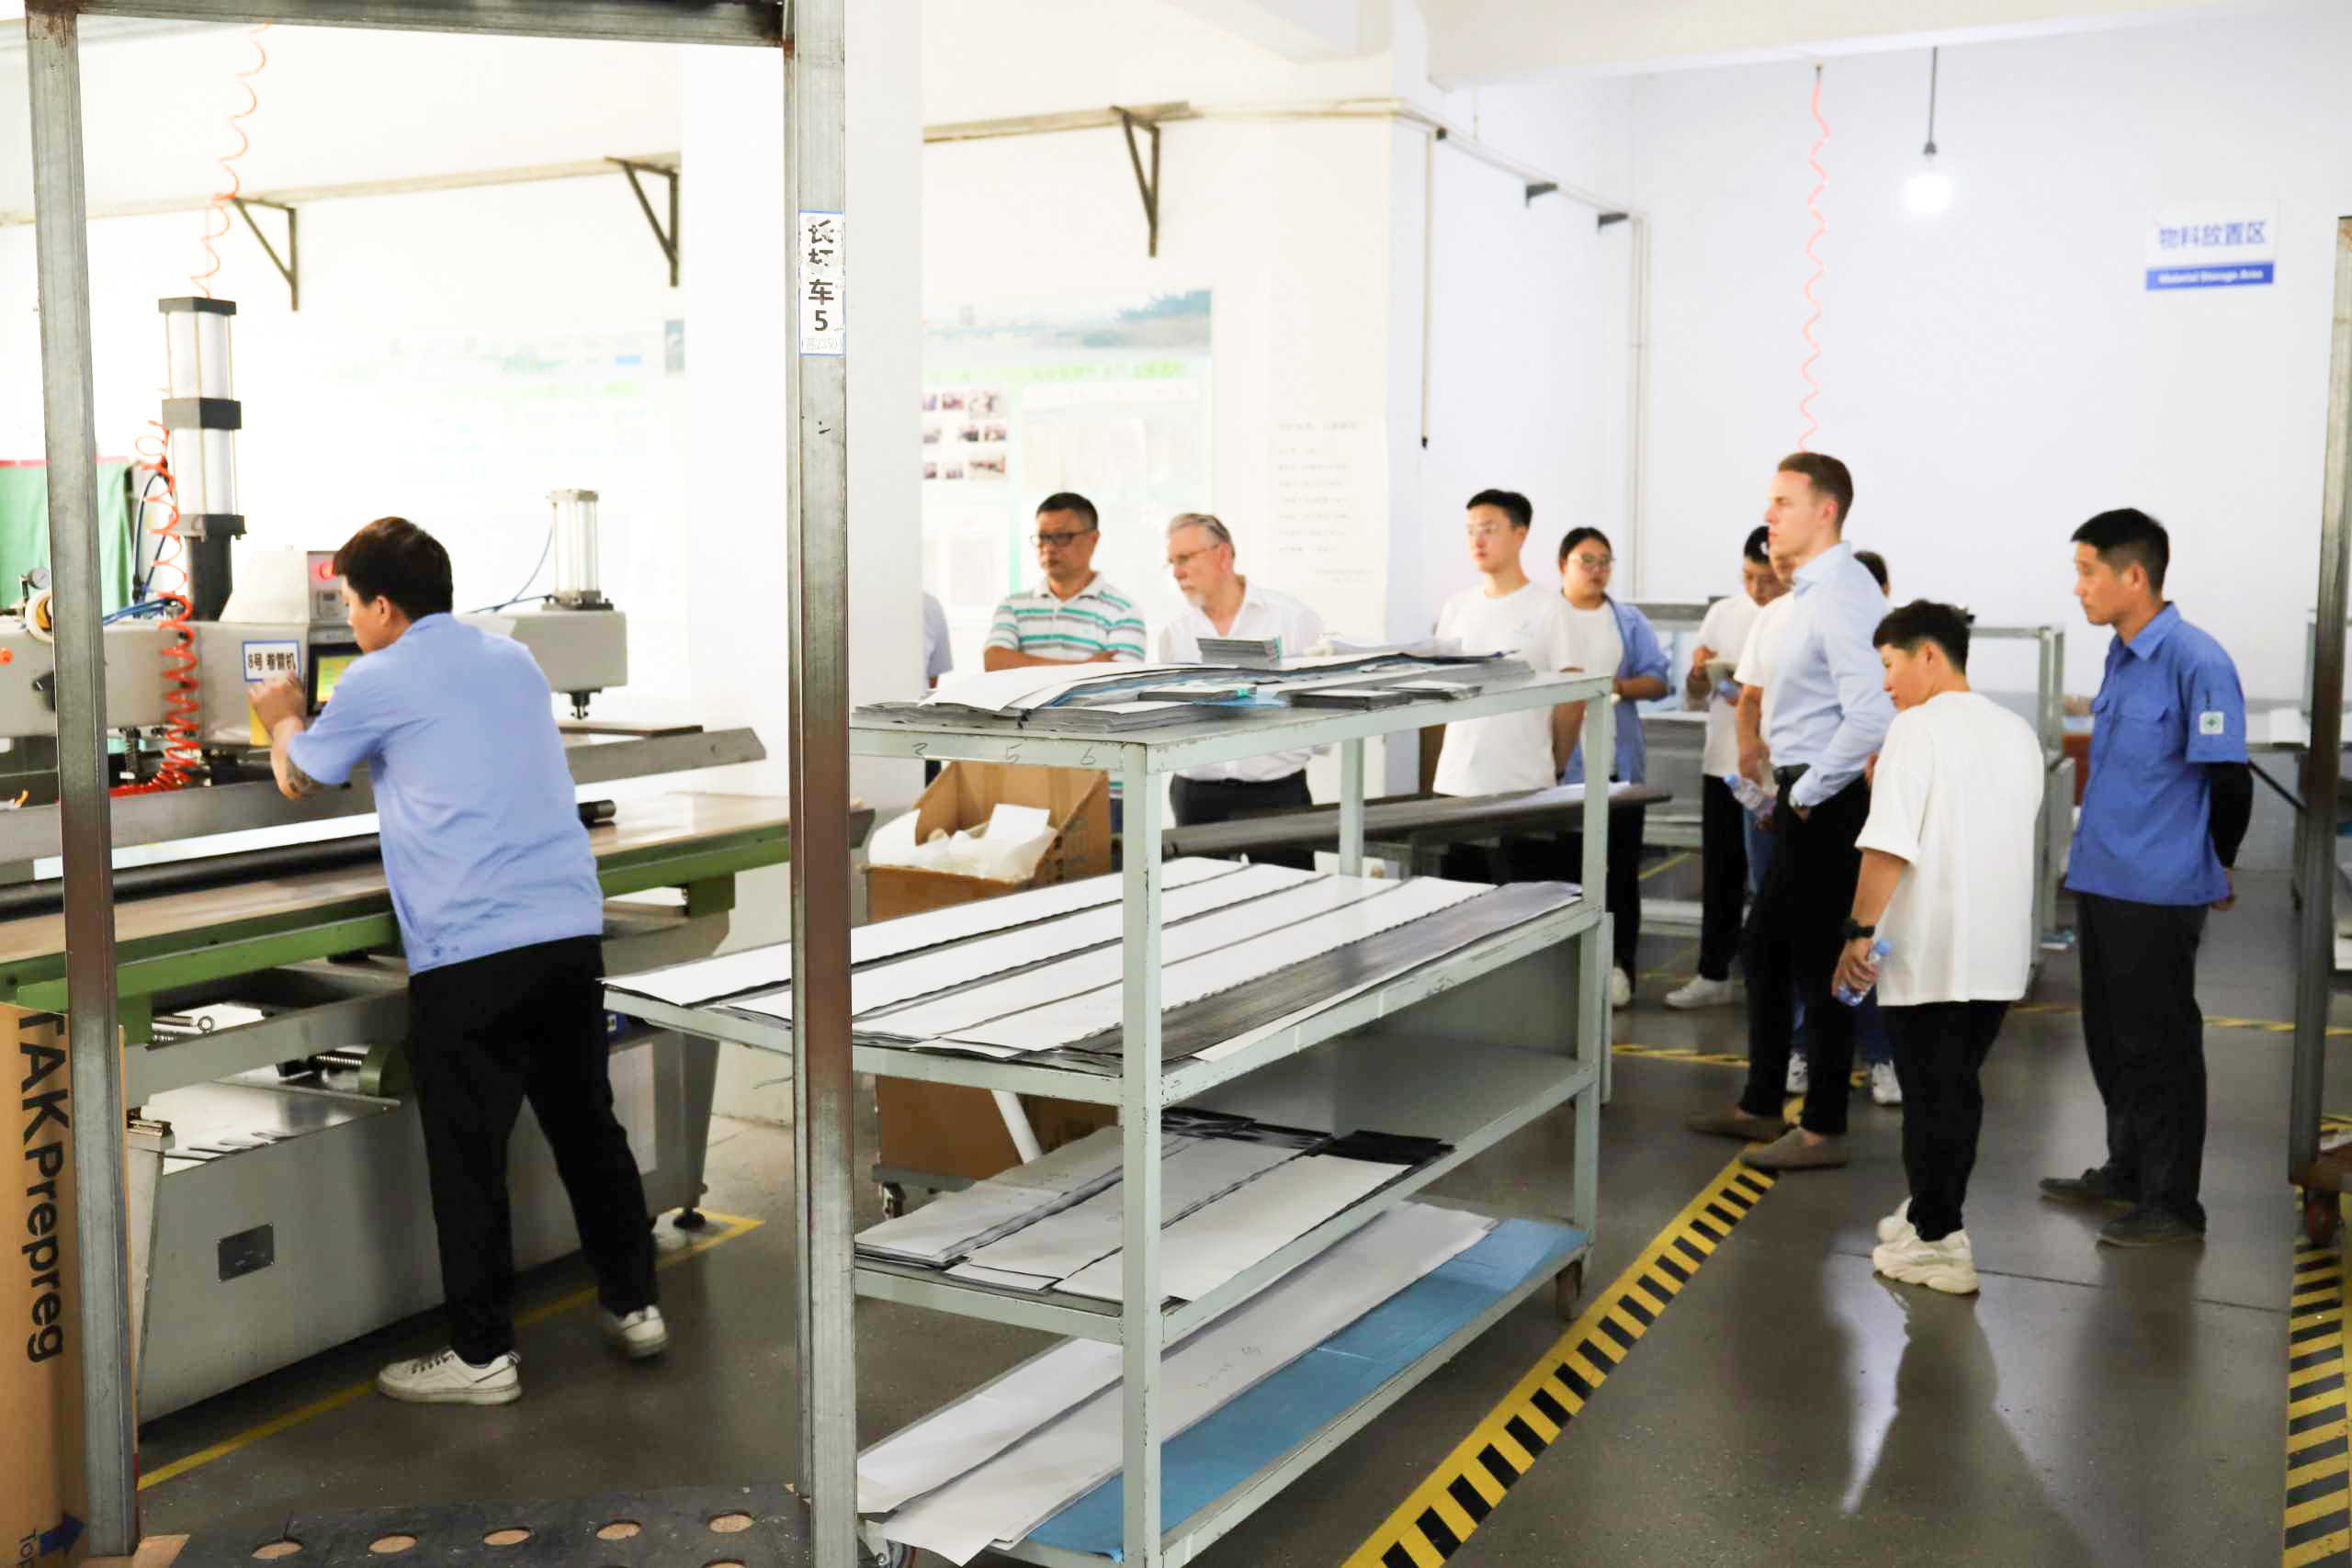 Un socio alemán de larga data visita nuestra fábrica en China para fortalecer los lazos comerciales